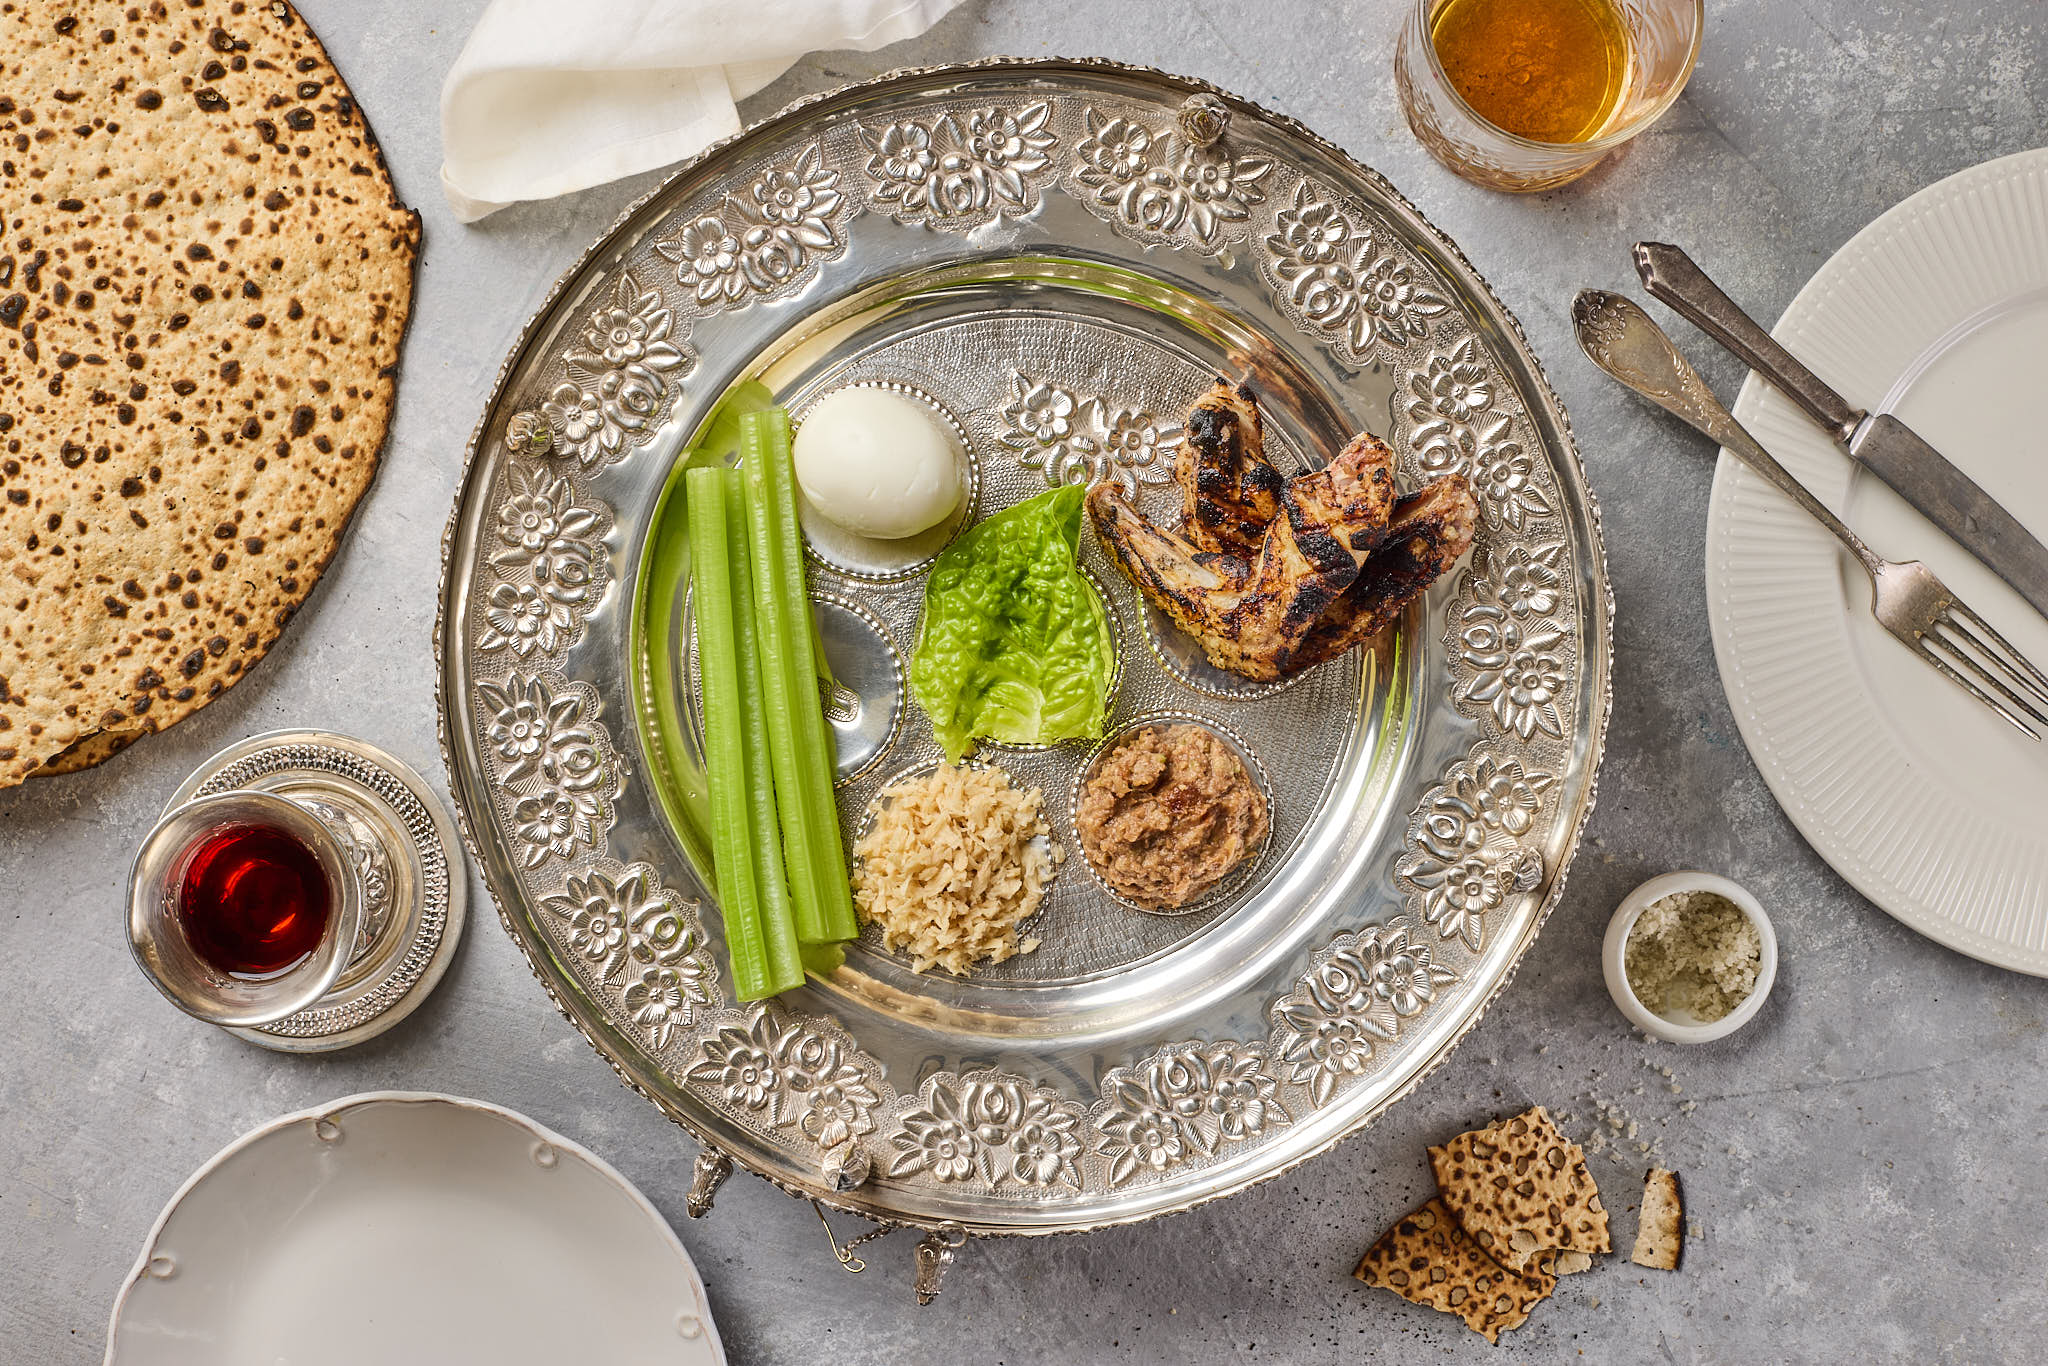 Royal Seder bowl – serves 5